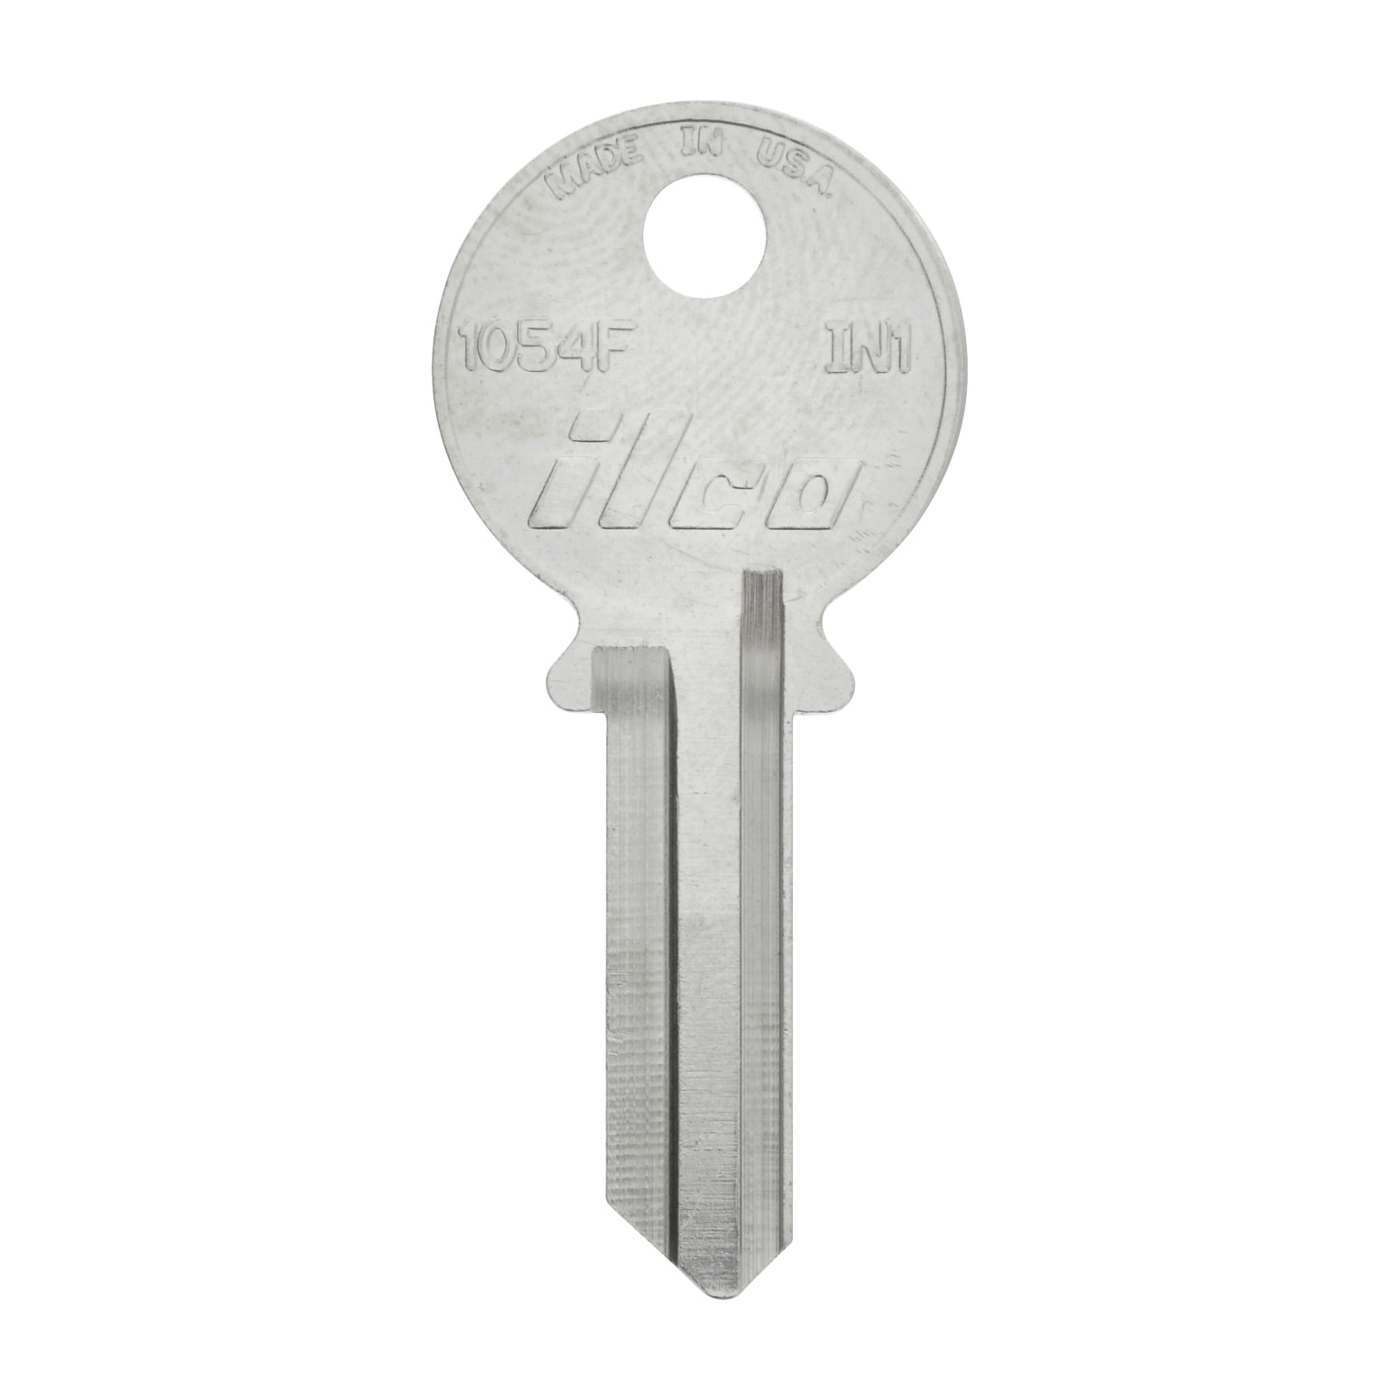 88606 Key Blank, Brass, For: Ilco Locks